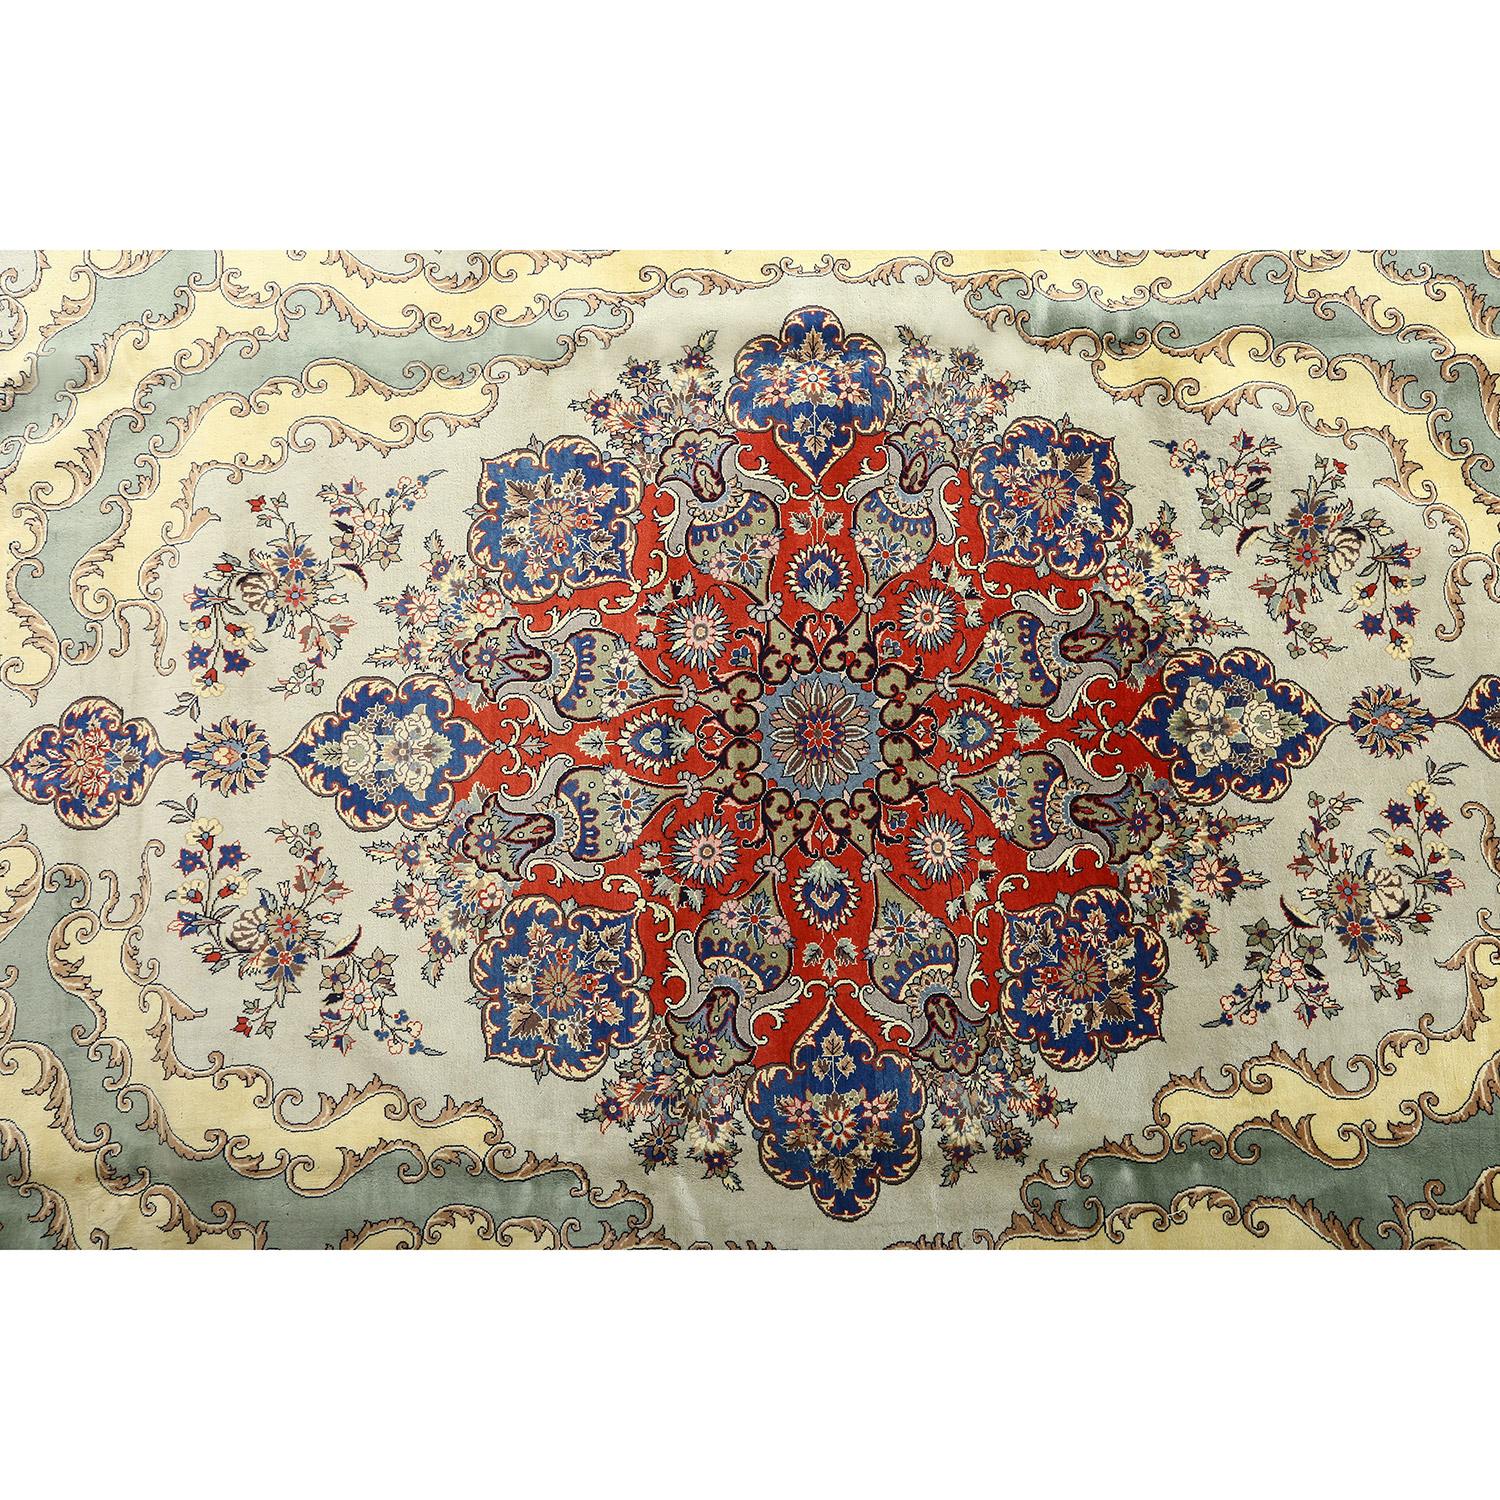 Ce tapis vintage de Qom Arsalani est un magnifique exemple de l'art et de l'artisanat qui ont fait la renommée mondiale des tapis de Qom. Avec ses motifs complexes et son design exquis, il met en valeur les techniques de tissage traditionnelles et